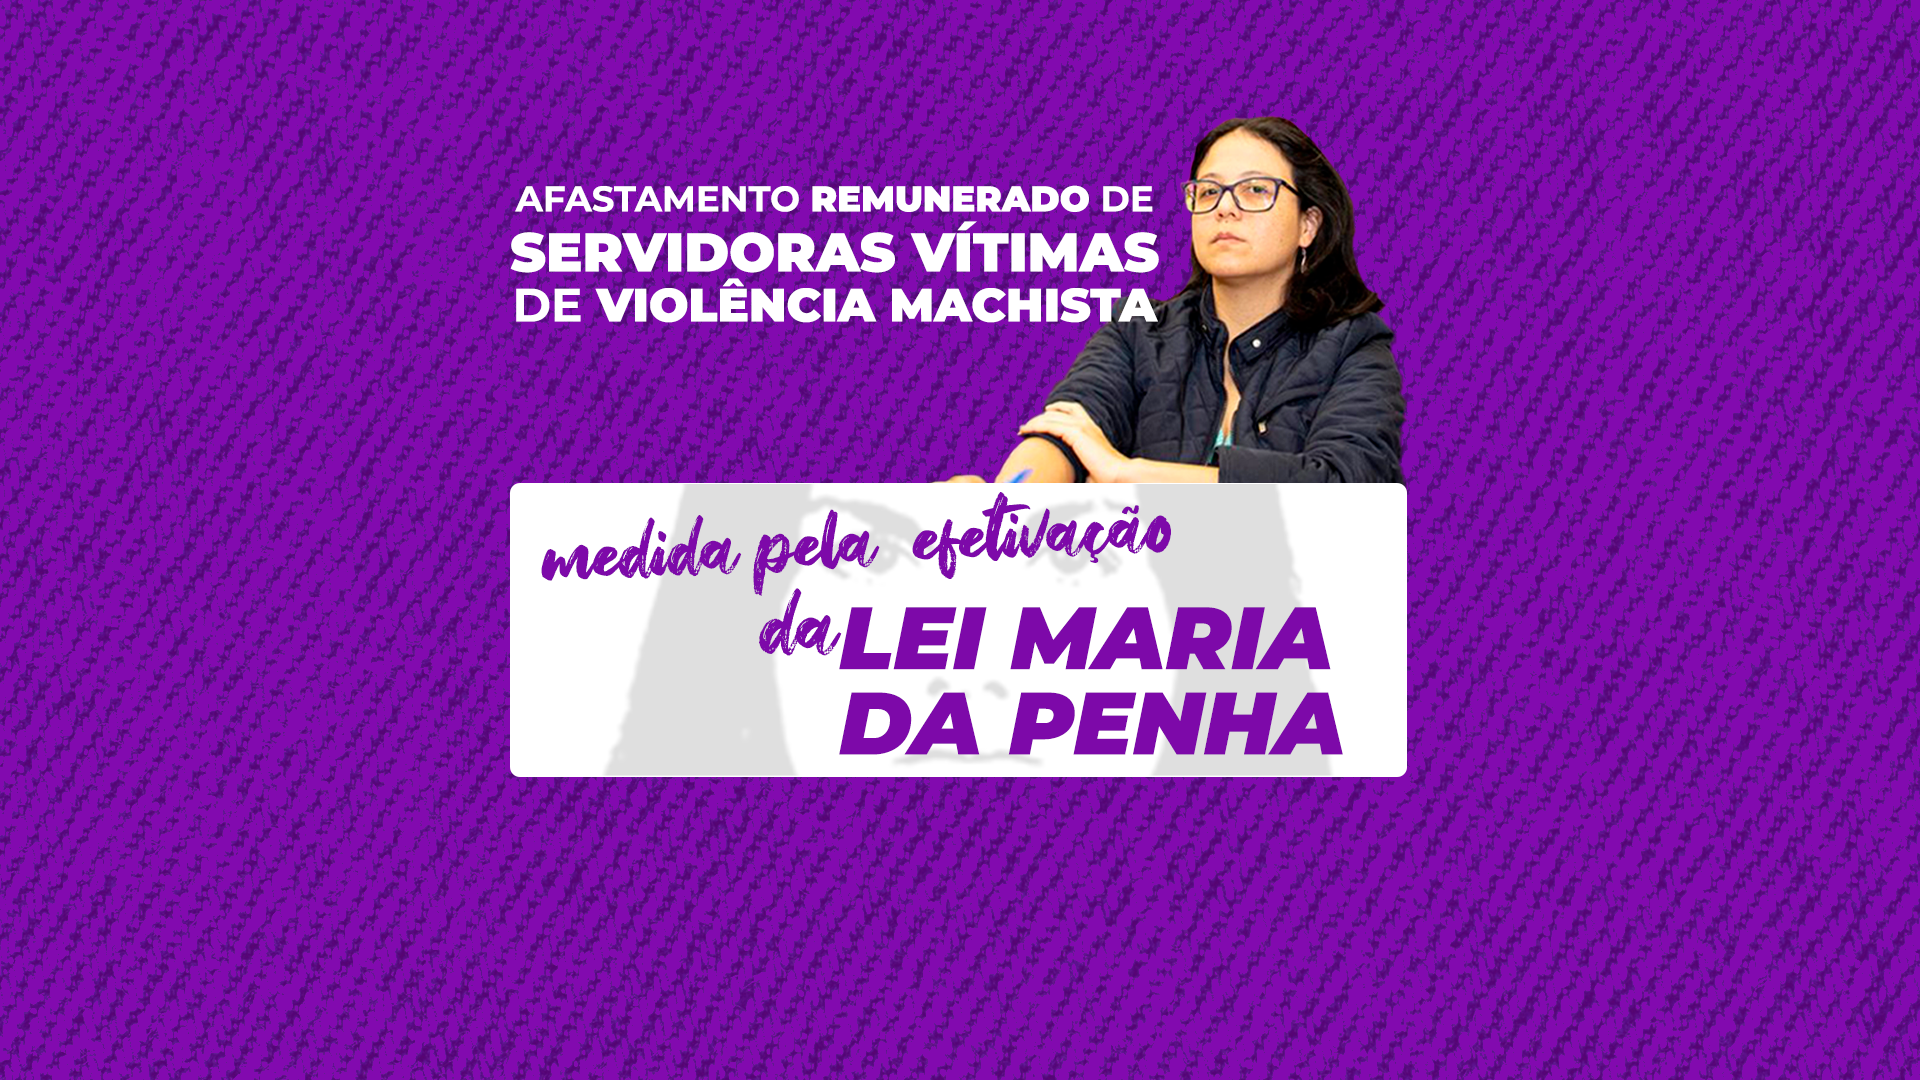 Mariana Conti propõe afastamento remunerado de servidoras municipais vítimas de violência